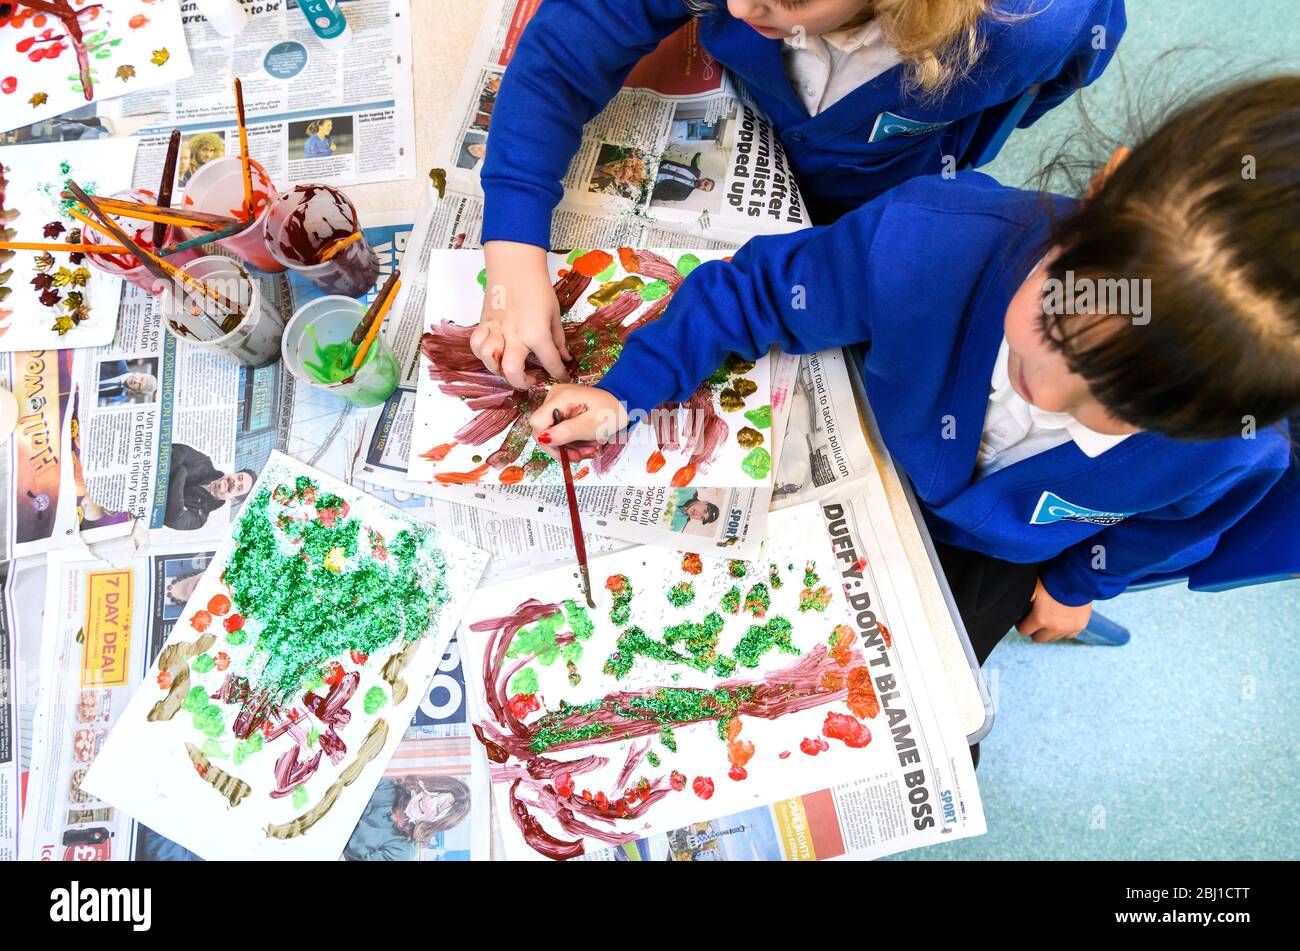 Jeunes enfants en peinture lors d'une leçon d'art dans une classe de réception à une école de Birmingham, West Midlands, Angleterre, Royaume-Uni Banque D'Images